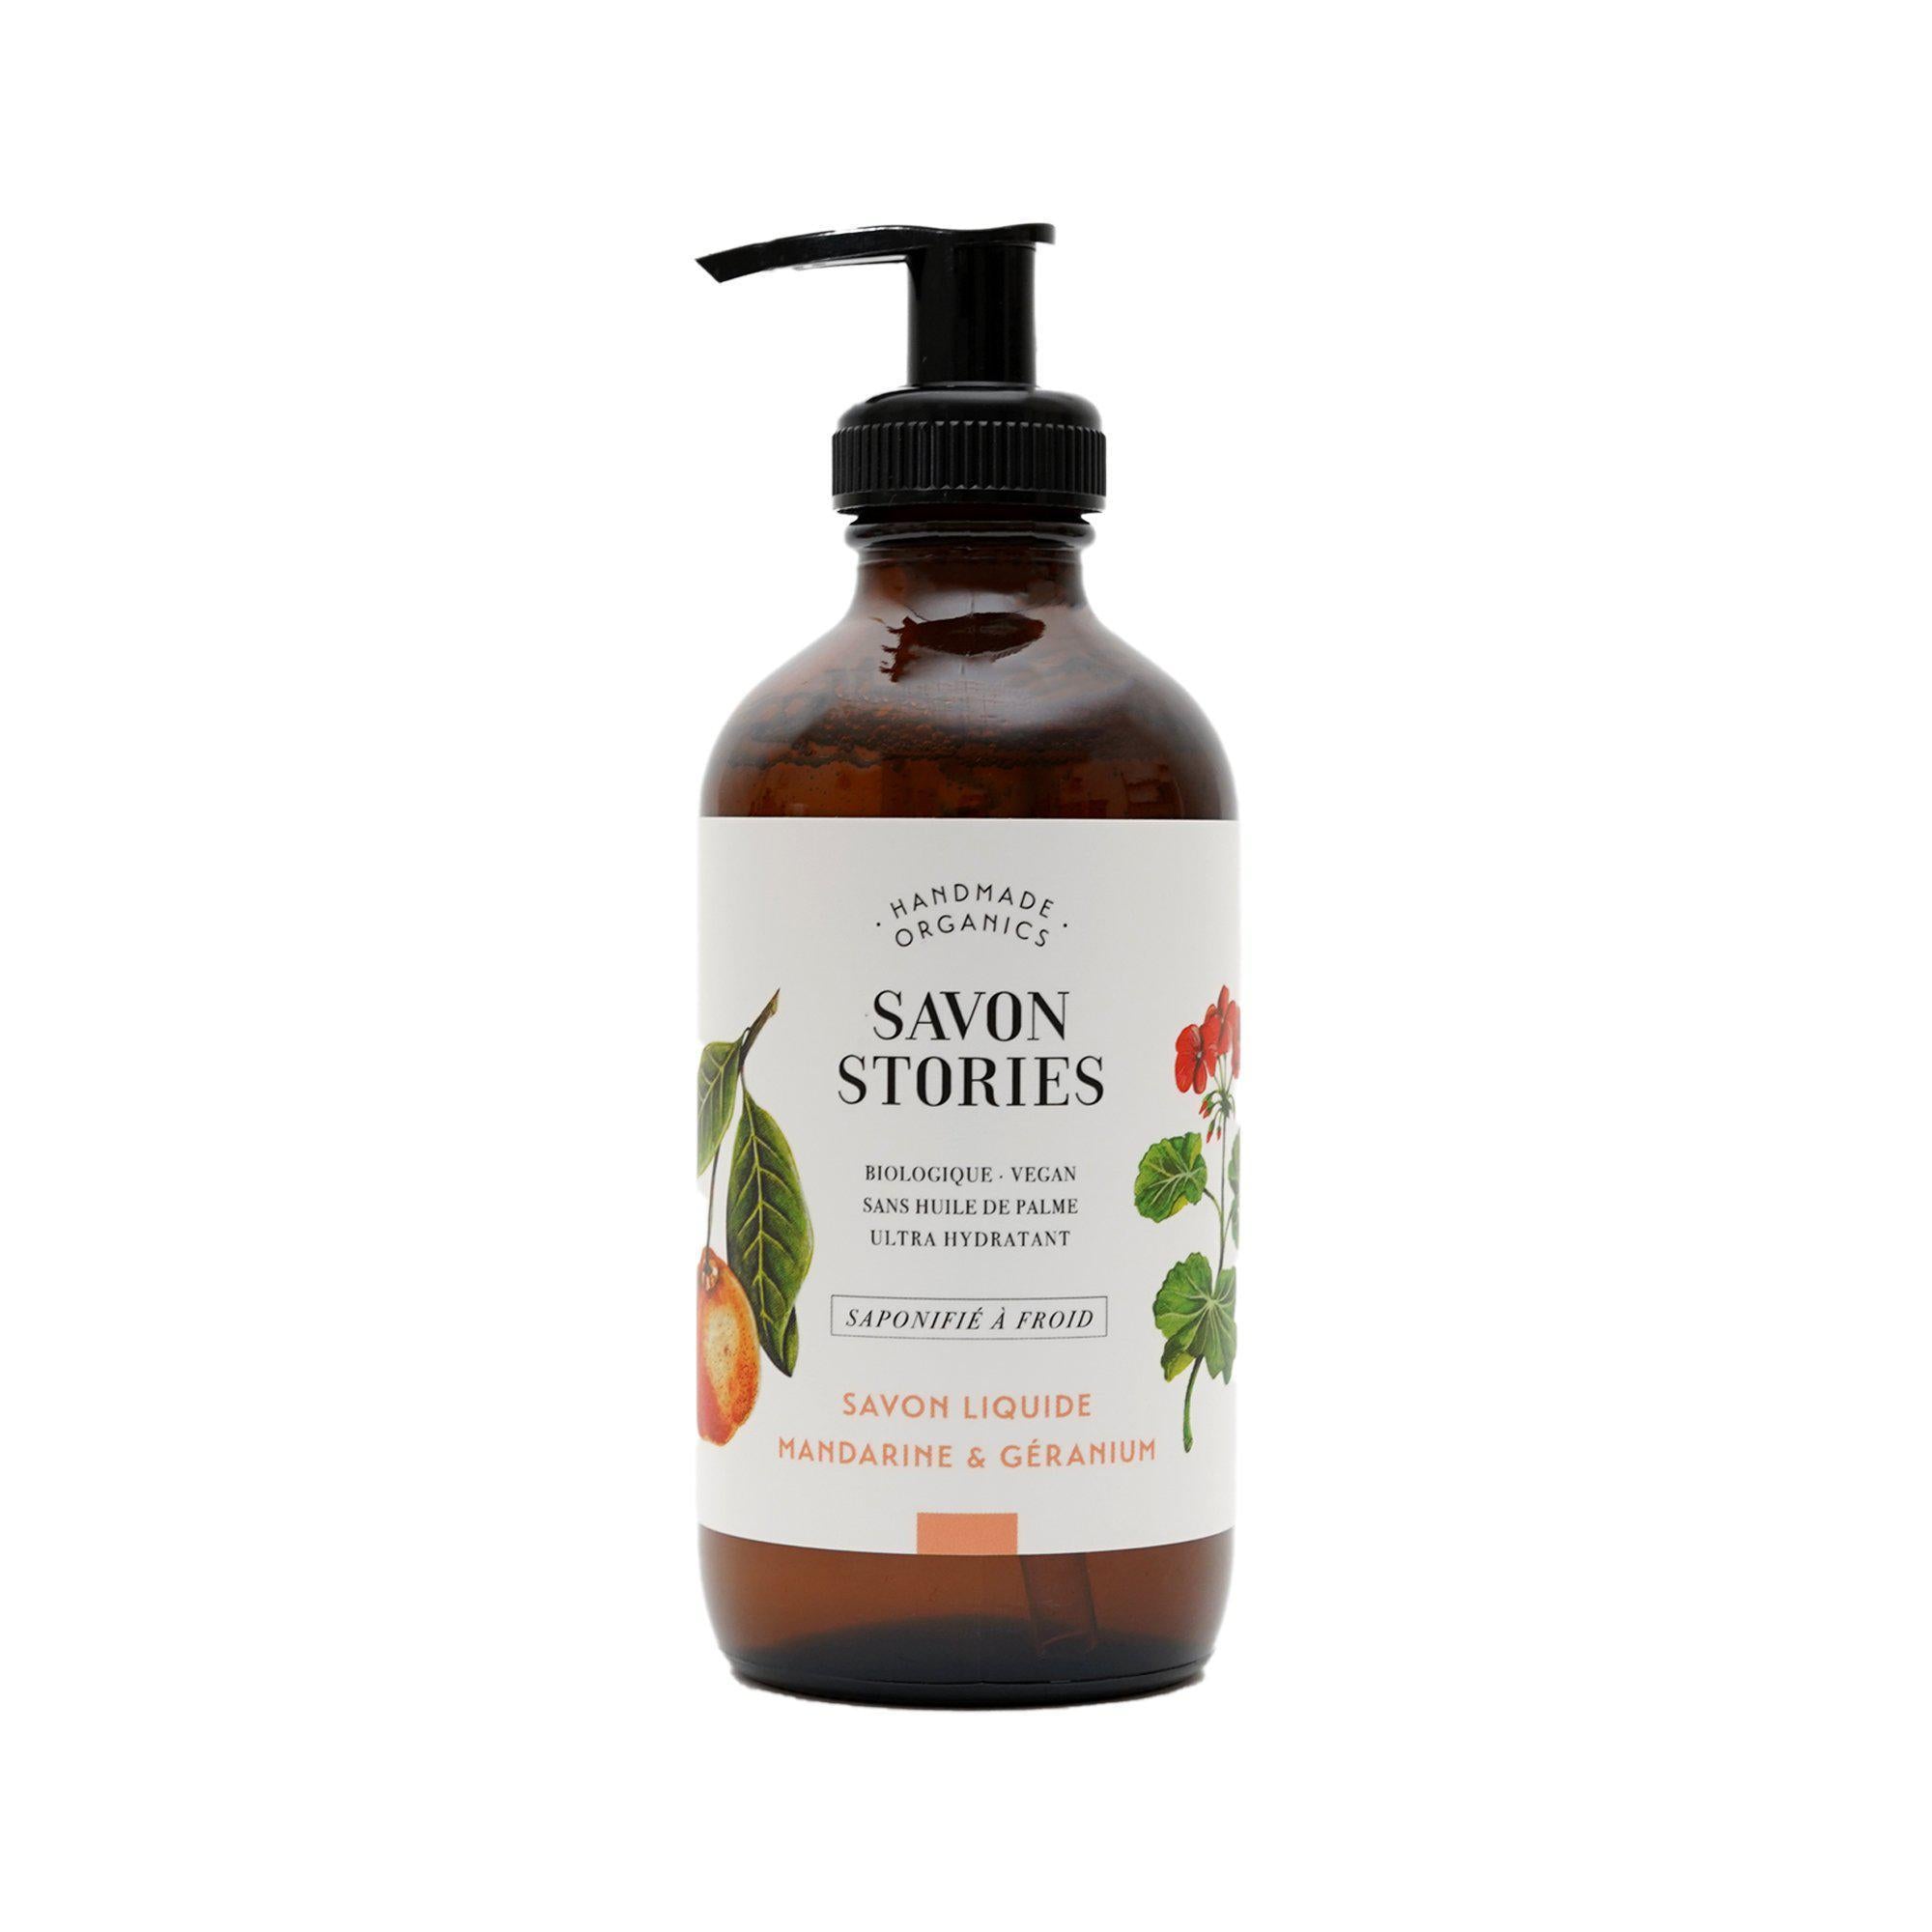 Savon Liquide Mandarine Géranium Mandarin Geranium Liquid Soap - Savon Stories